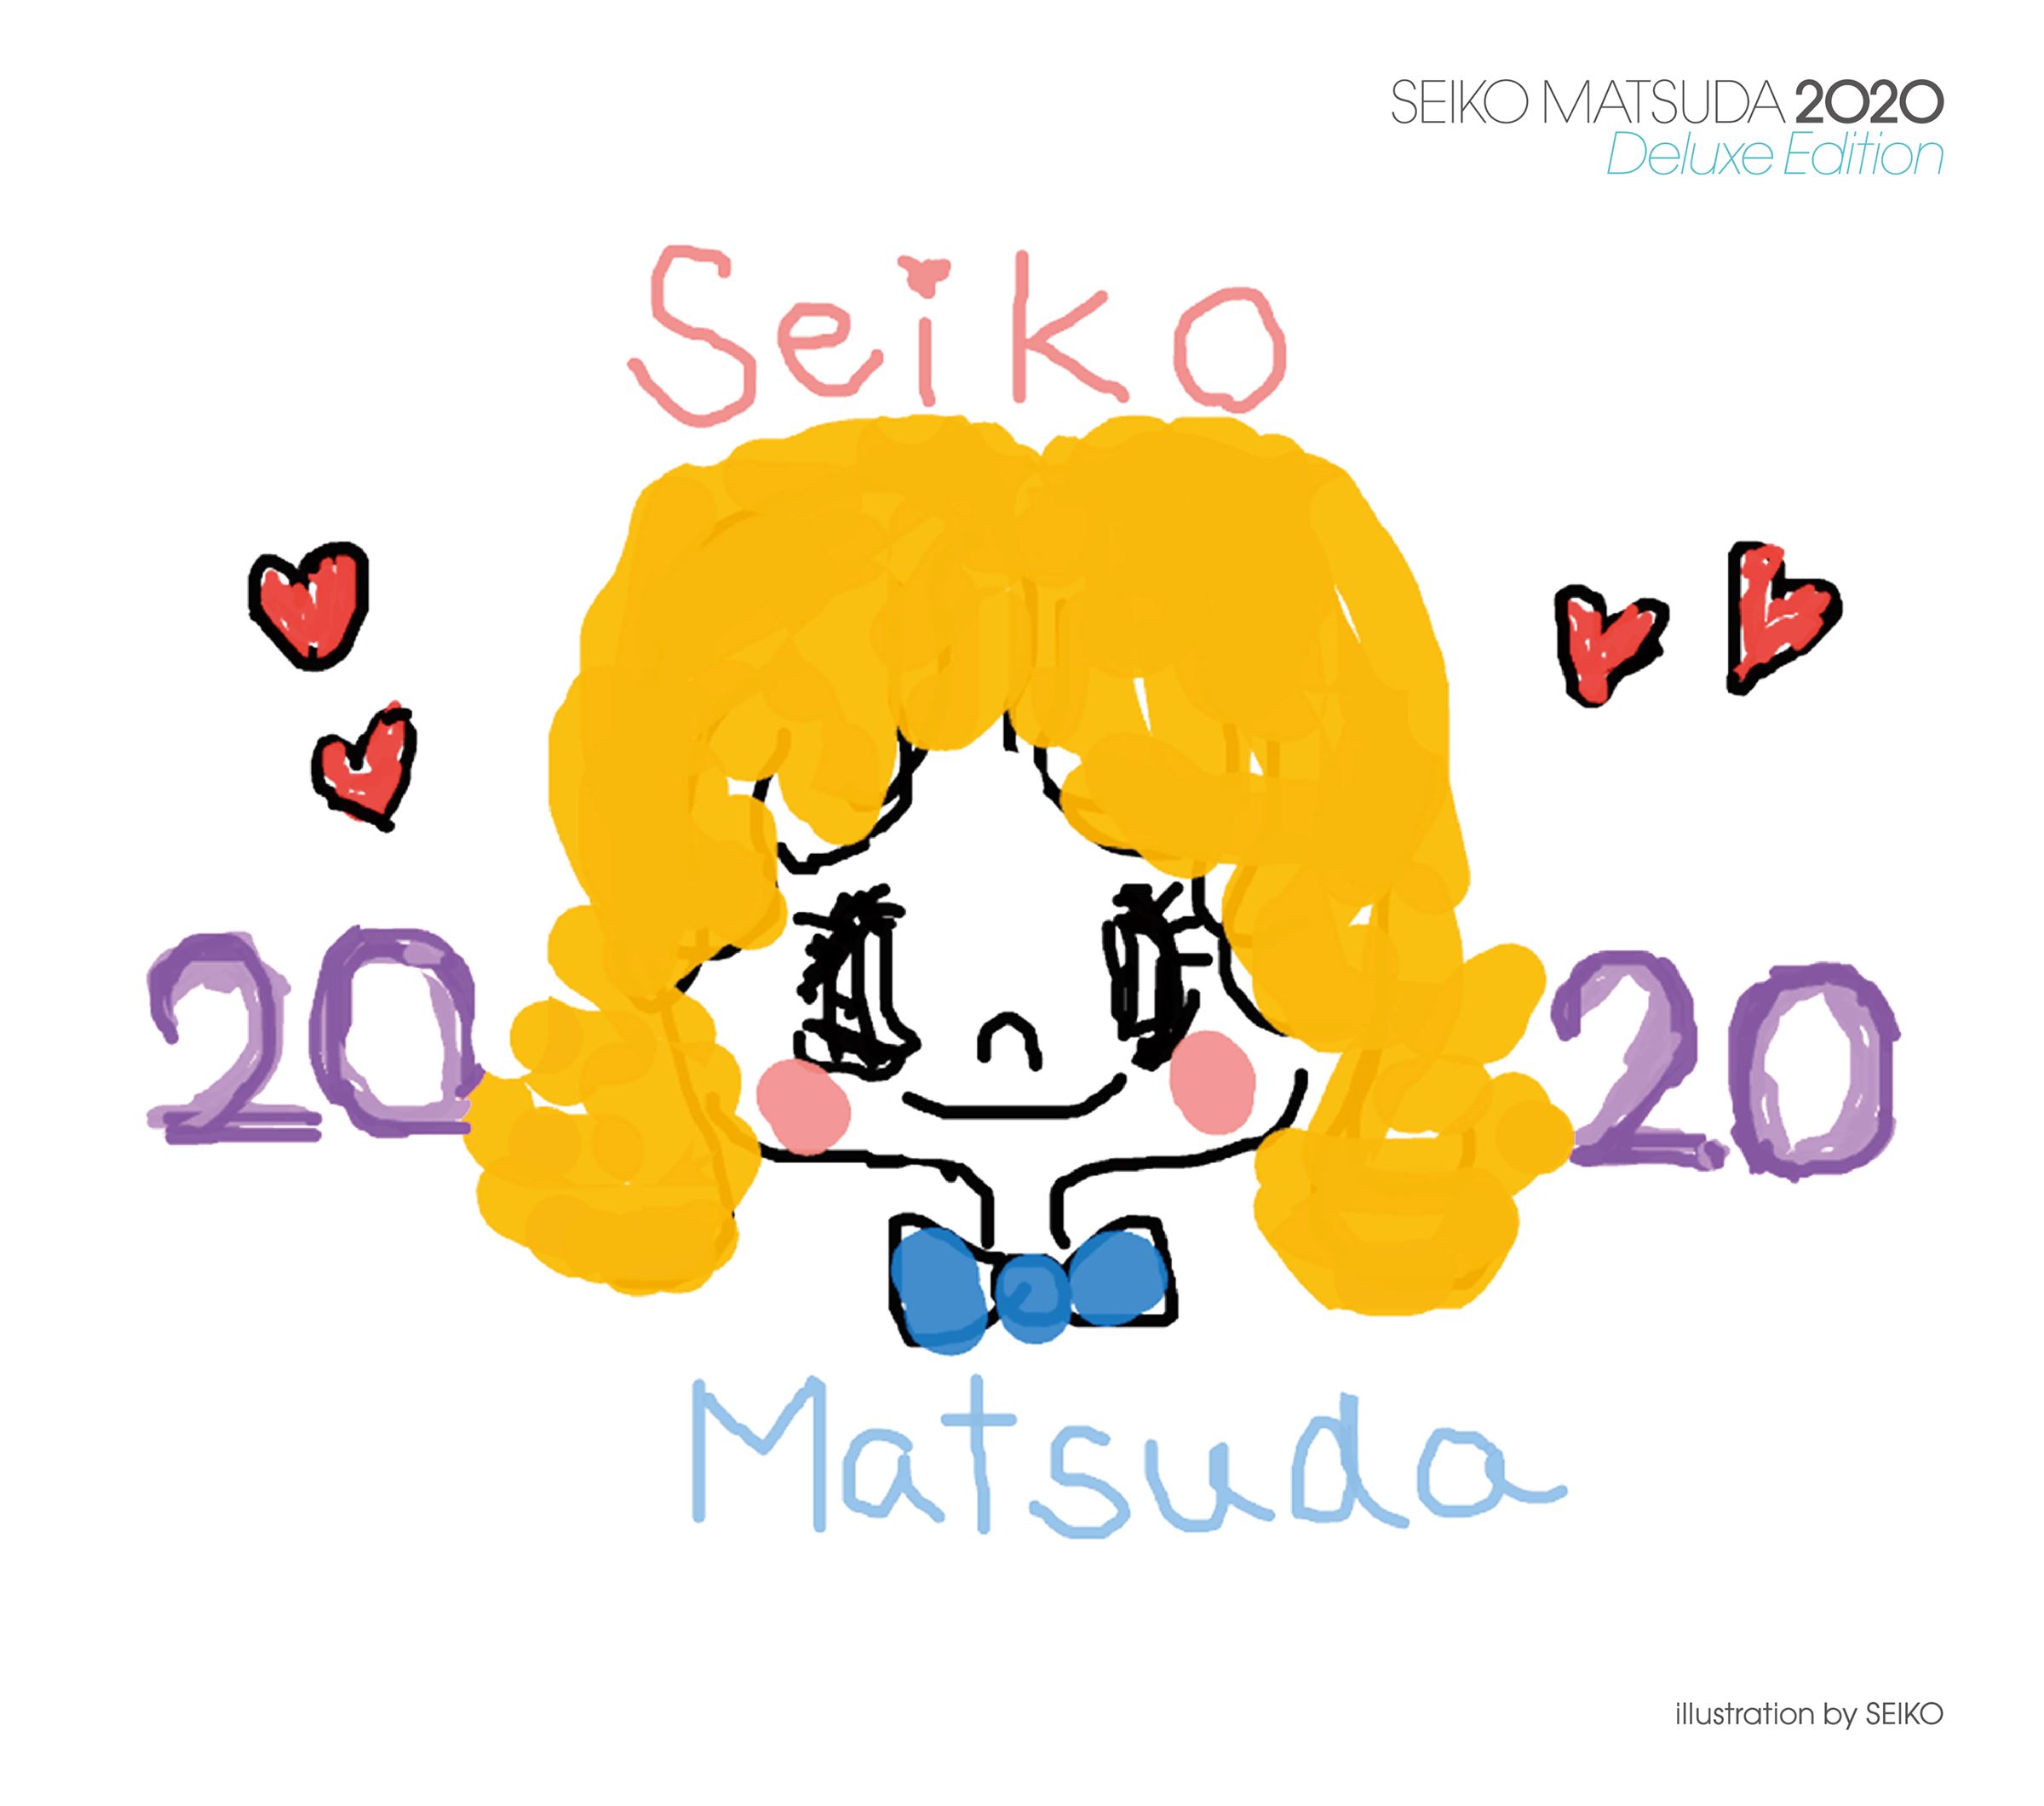 松田聖子『SEIKO MATSUDA 2020』デラックス・エディション ジャケット